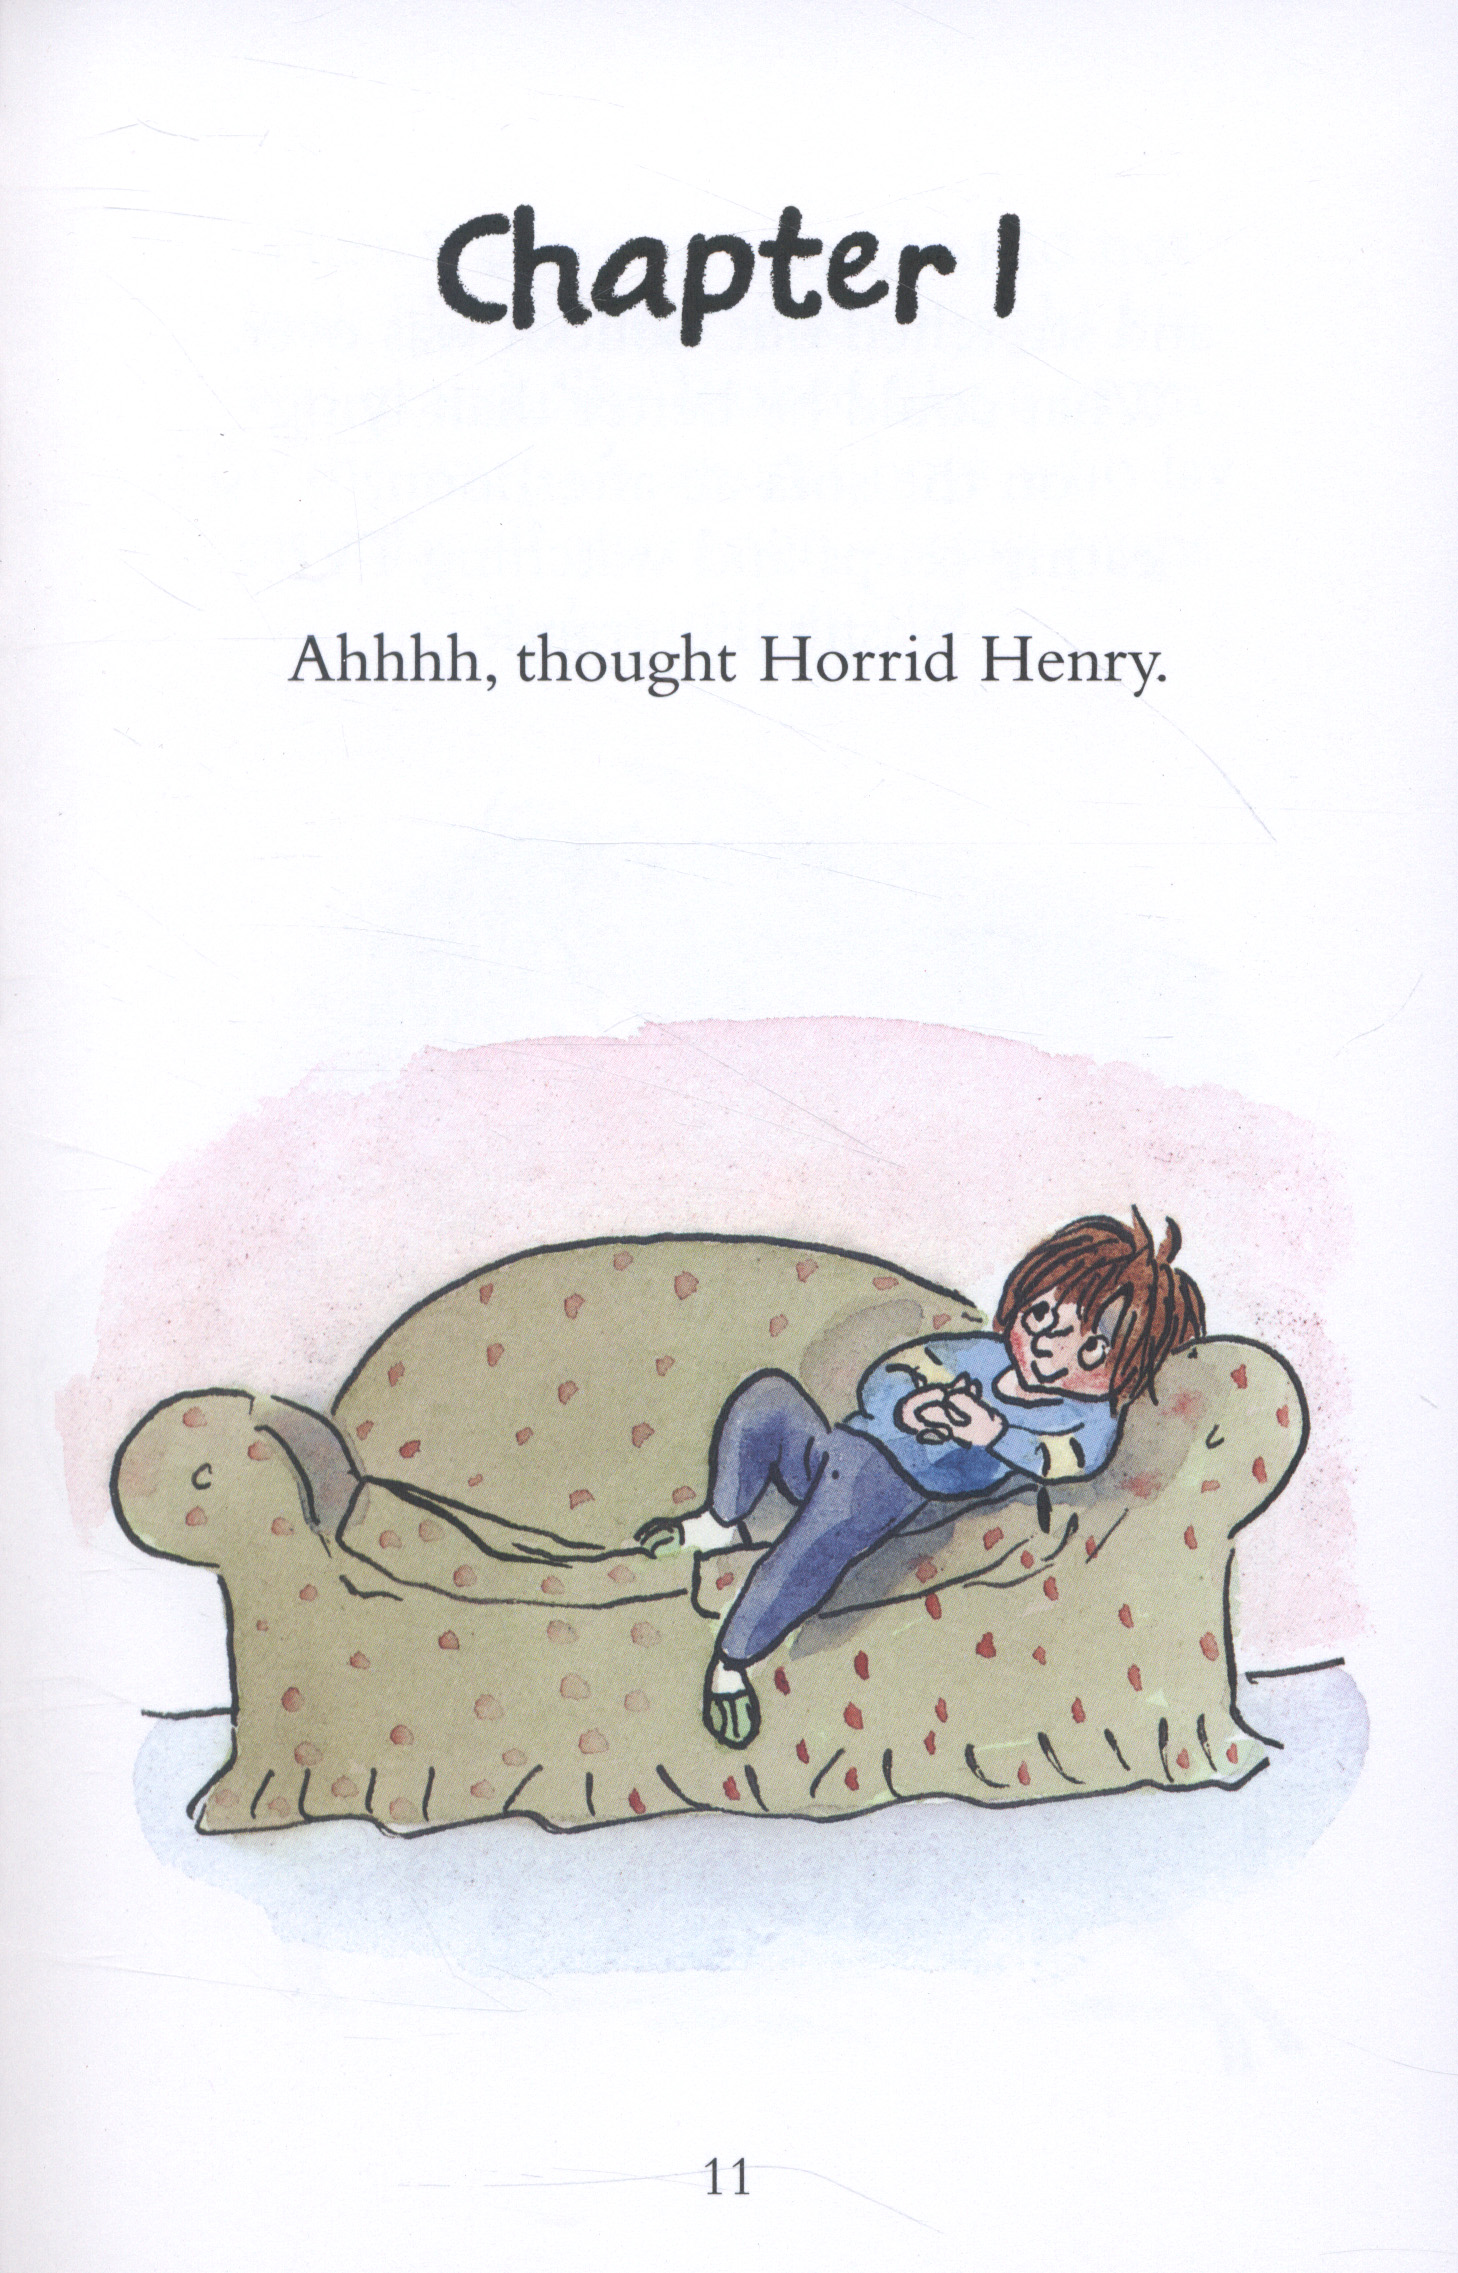 horrid henry homework book